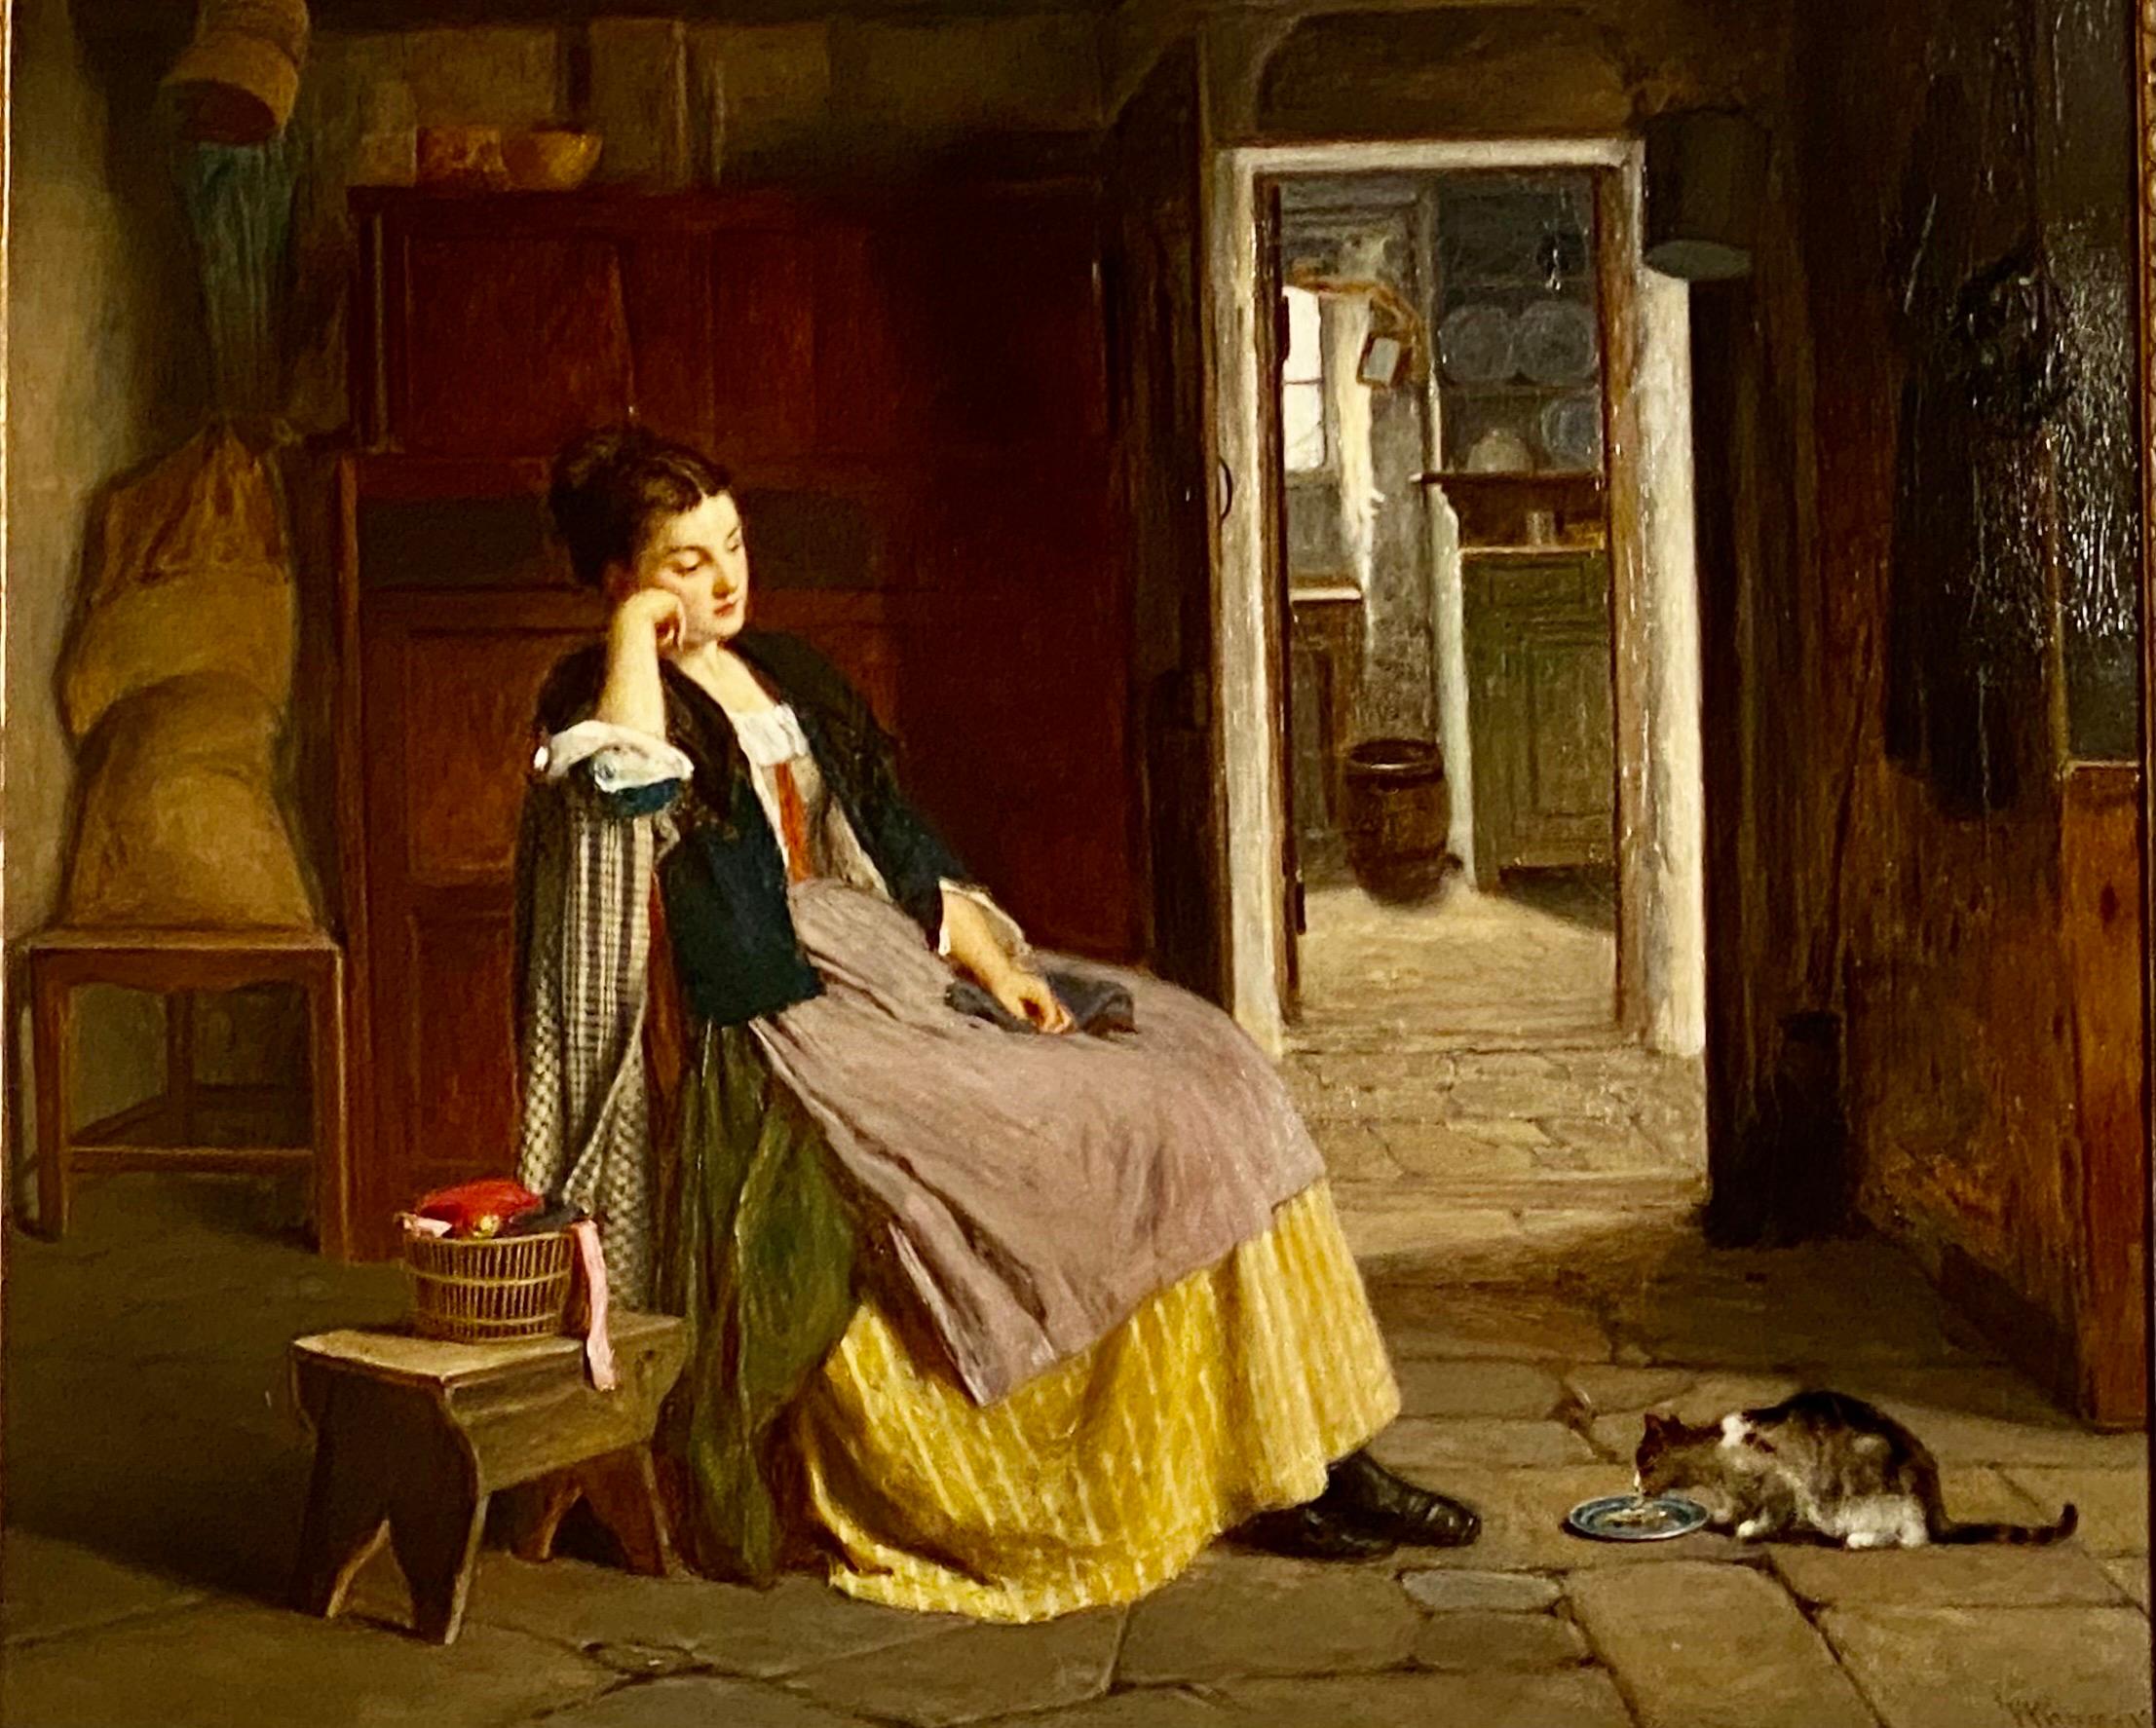 Gekonnte Studie einer Frau des viktorianischen Genremalers Haynes King (1831-1904).
King wurde gegen Ende des 19. Jahrhunderts für seine Darstellungen des Alltags in den Arbeiterhäusern hoch geschätzt. Gemälde wie 